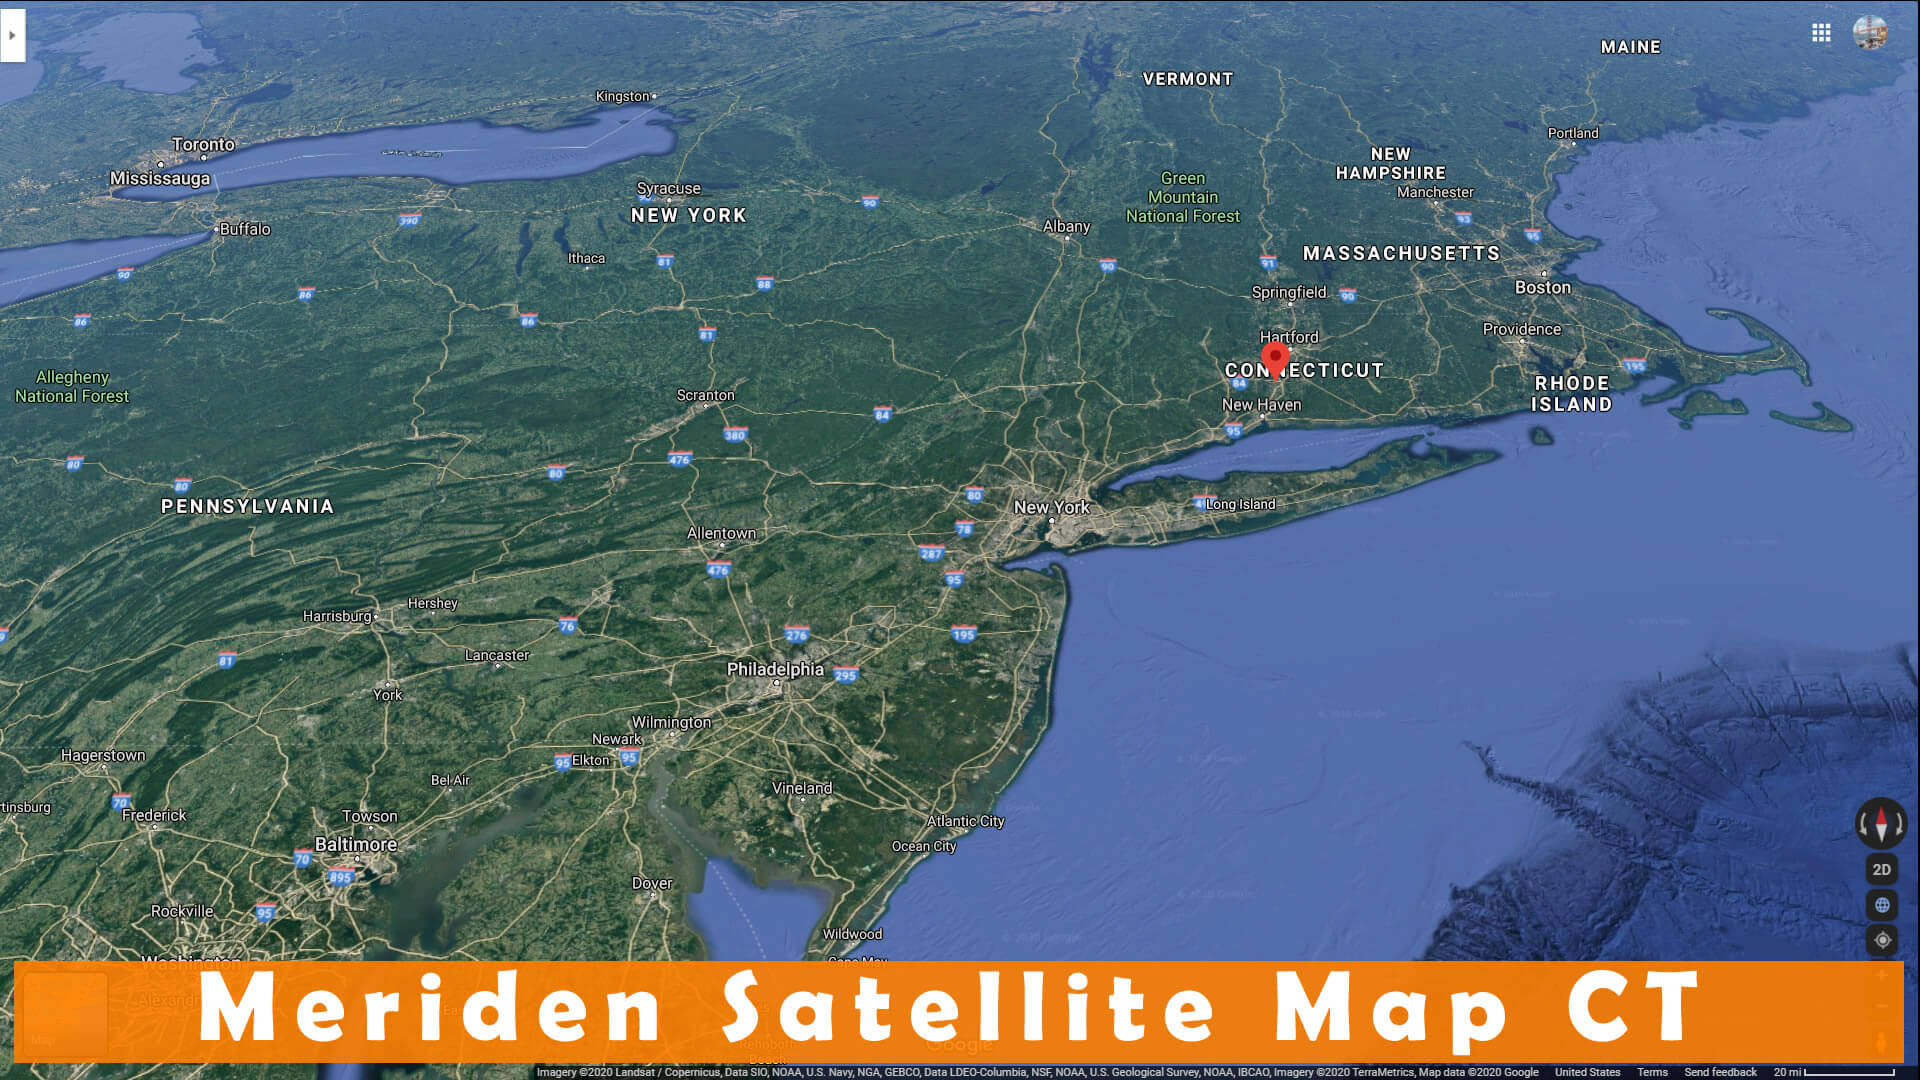 Meriden Satellite Map CT